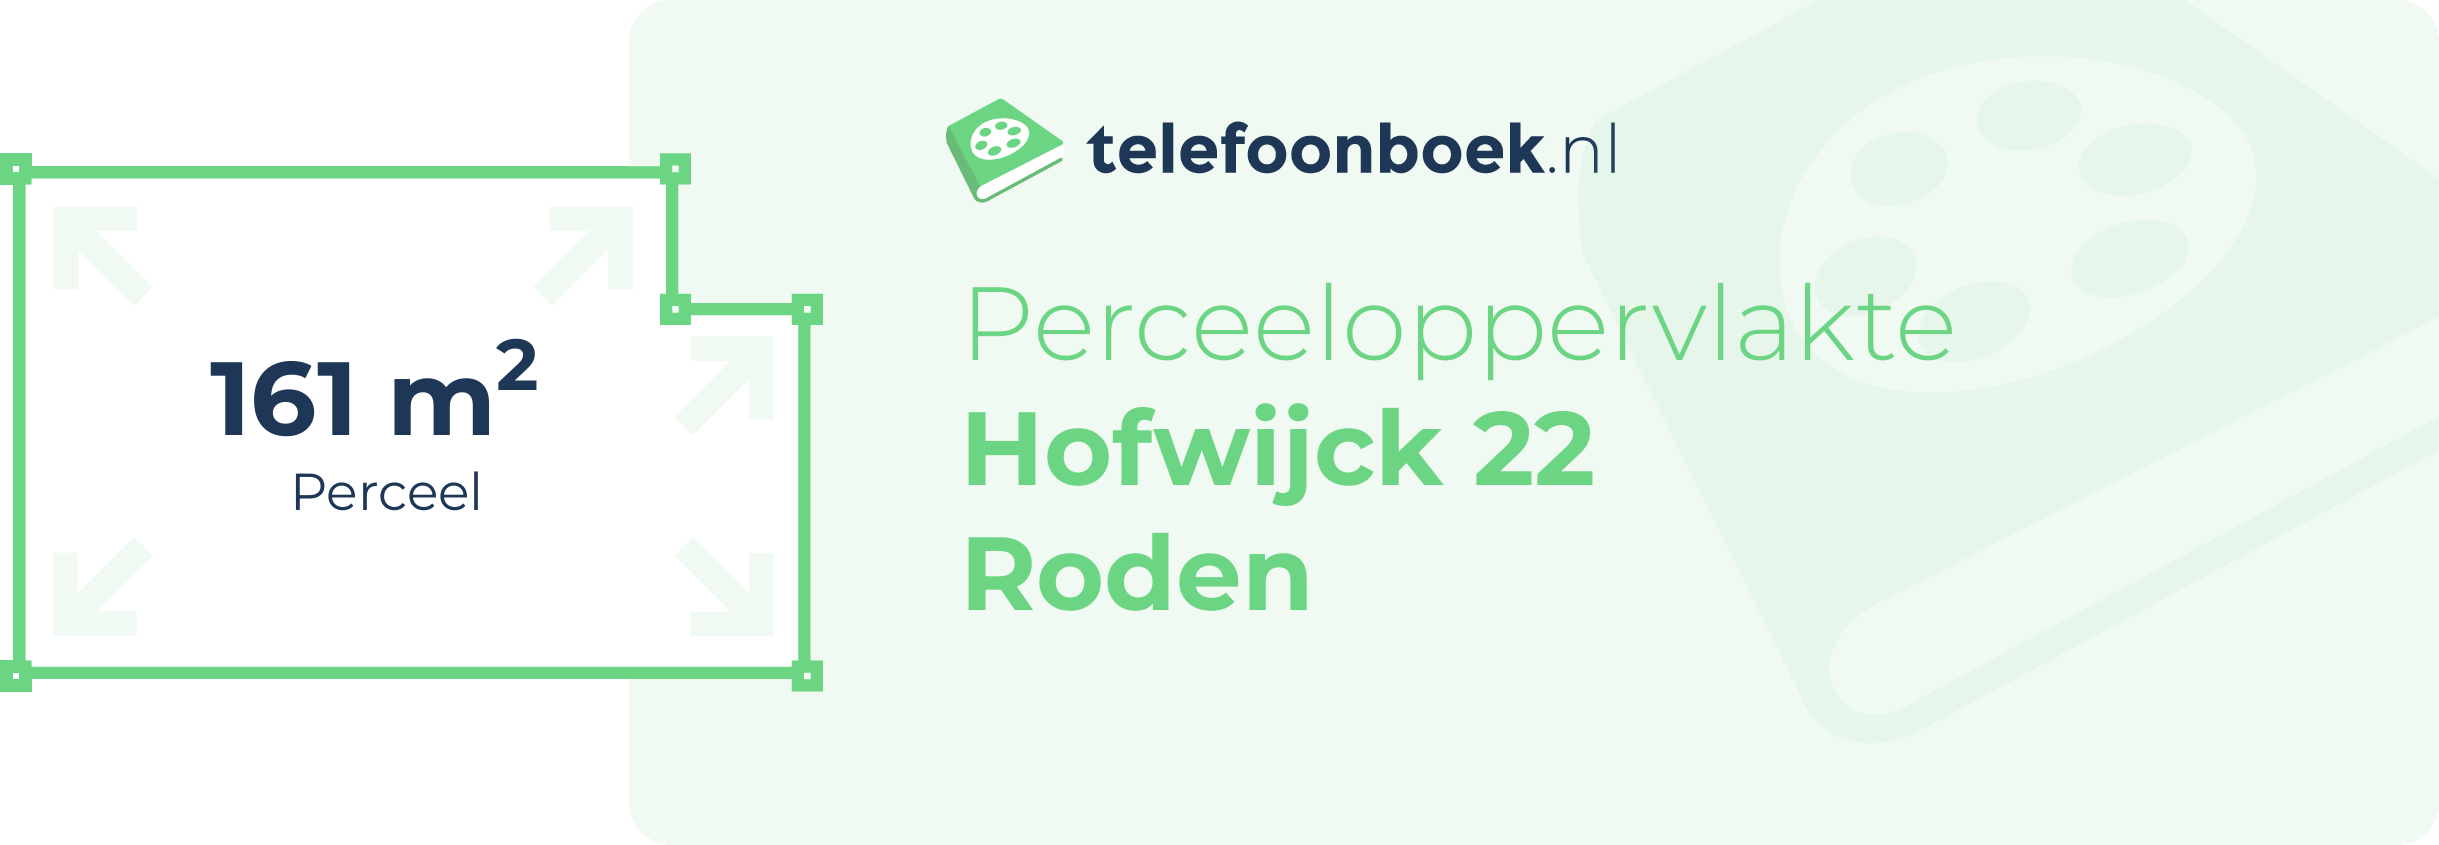 Perceeloppervlakte Hofwijck 22 Roden